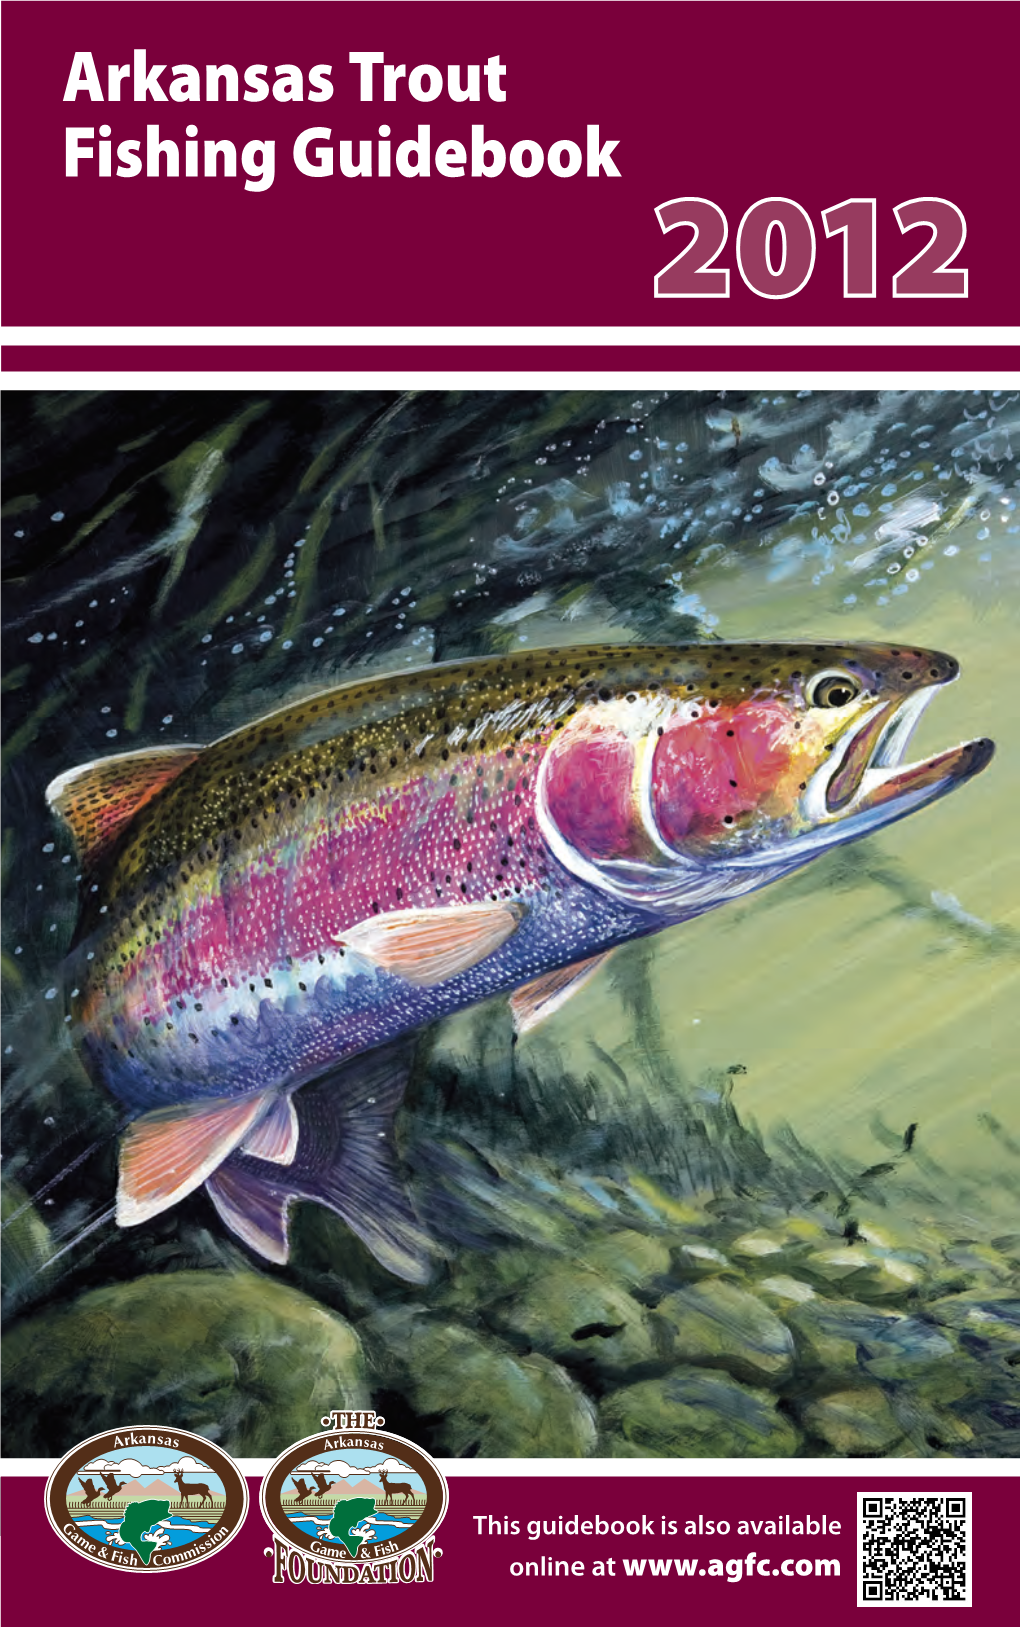 Arkansas Trout Fishing Guidebook 2012